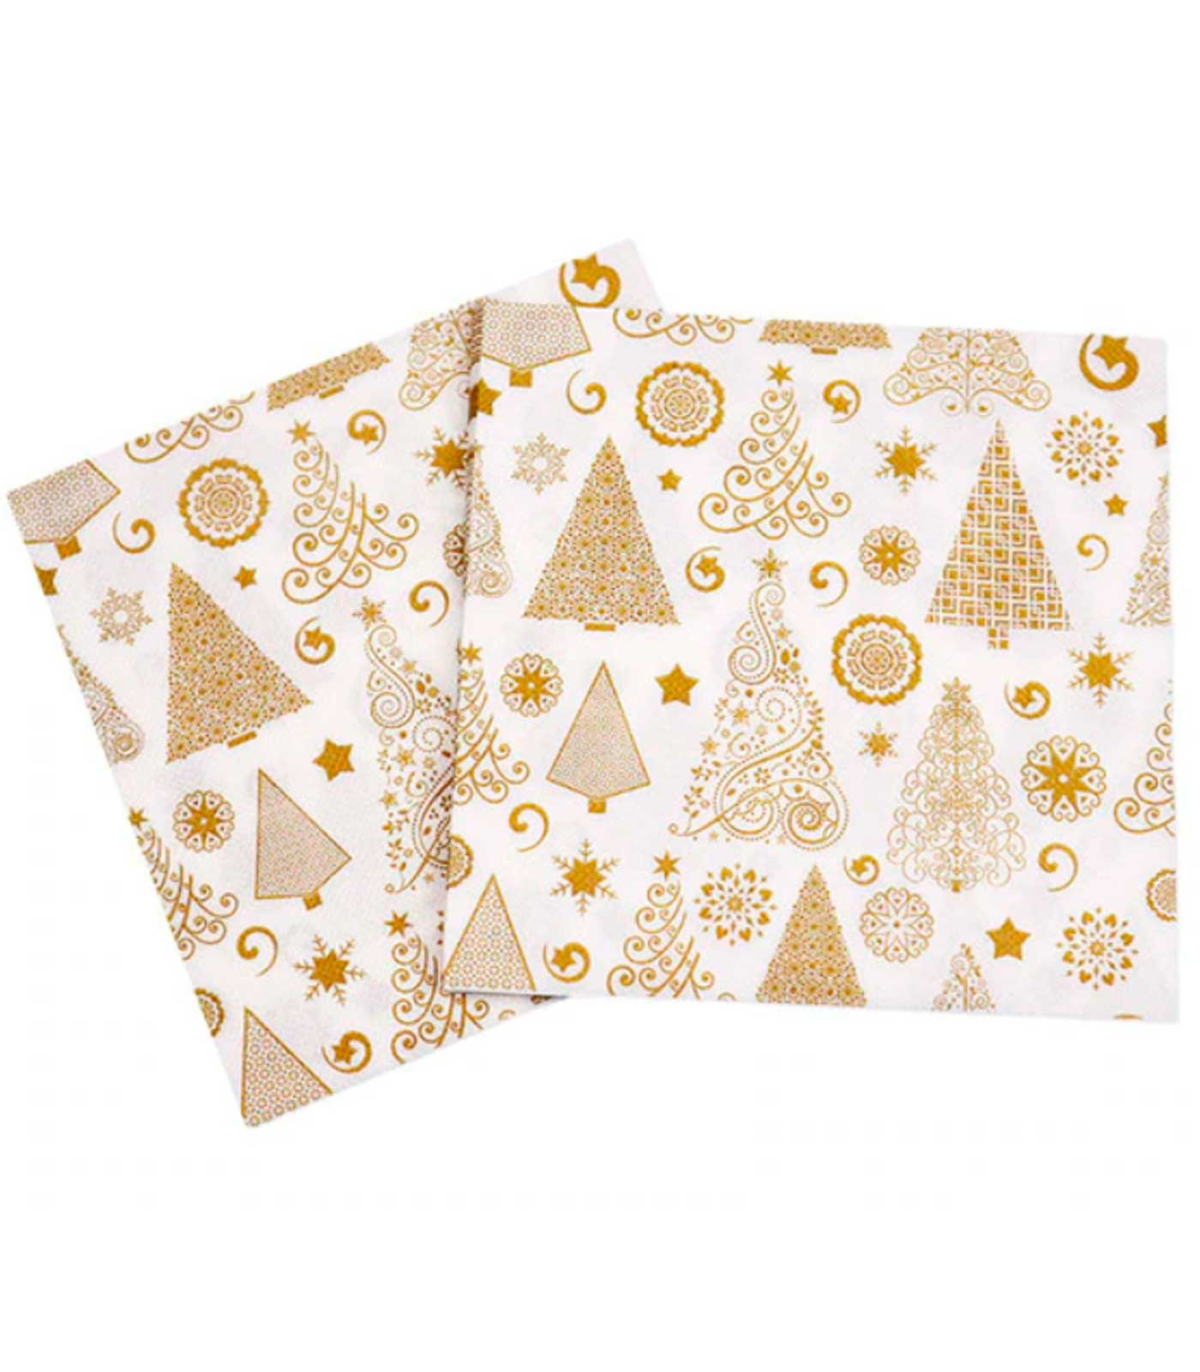 Tradineur - Pack de 20 servilletas navideñas de papel decoradas, fiestas,  celebraciones, decoración de Navidad, 33 x 33 cm, dise